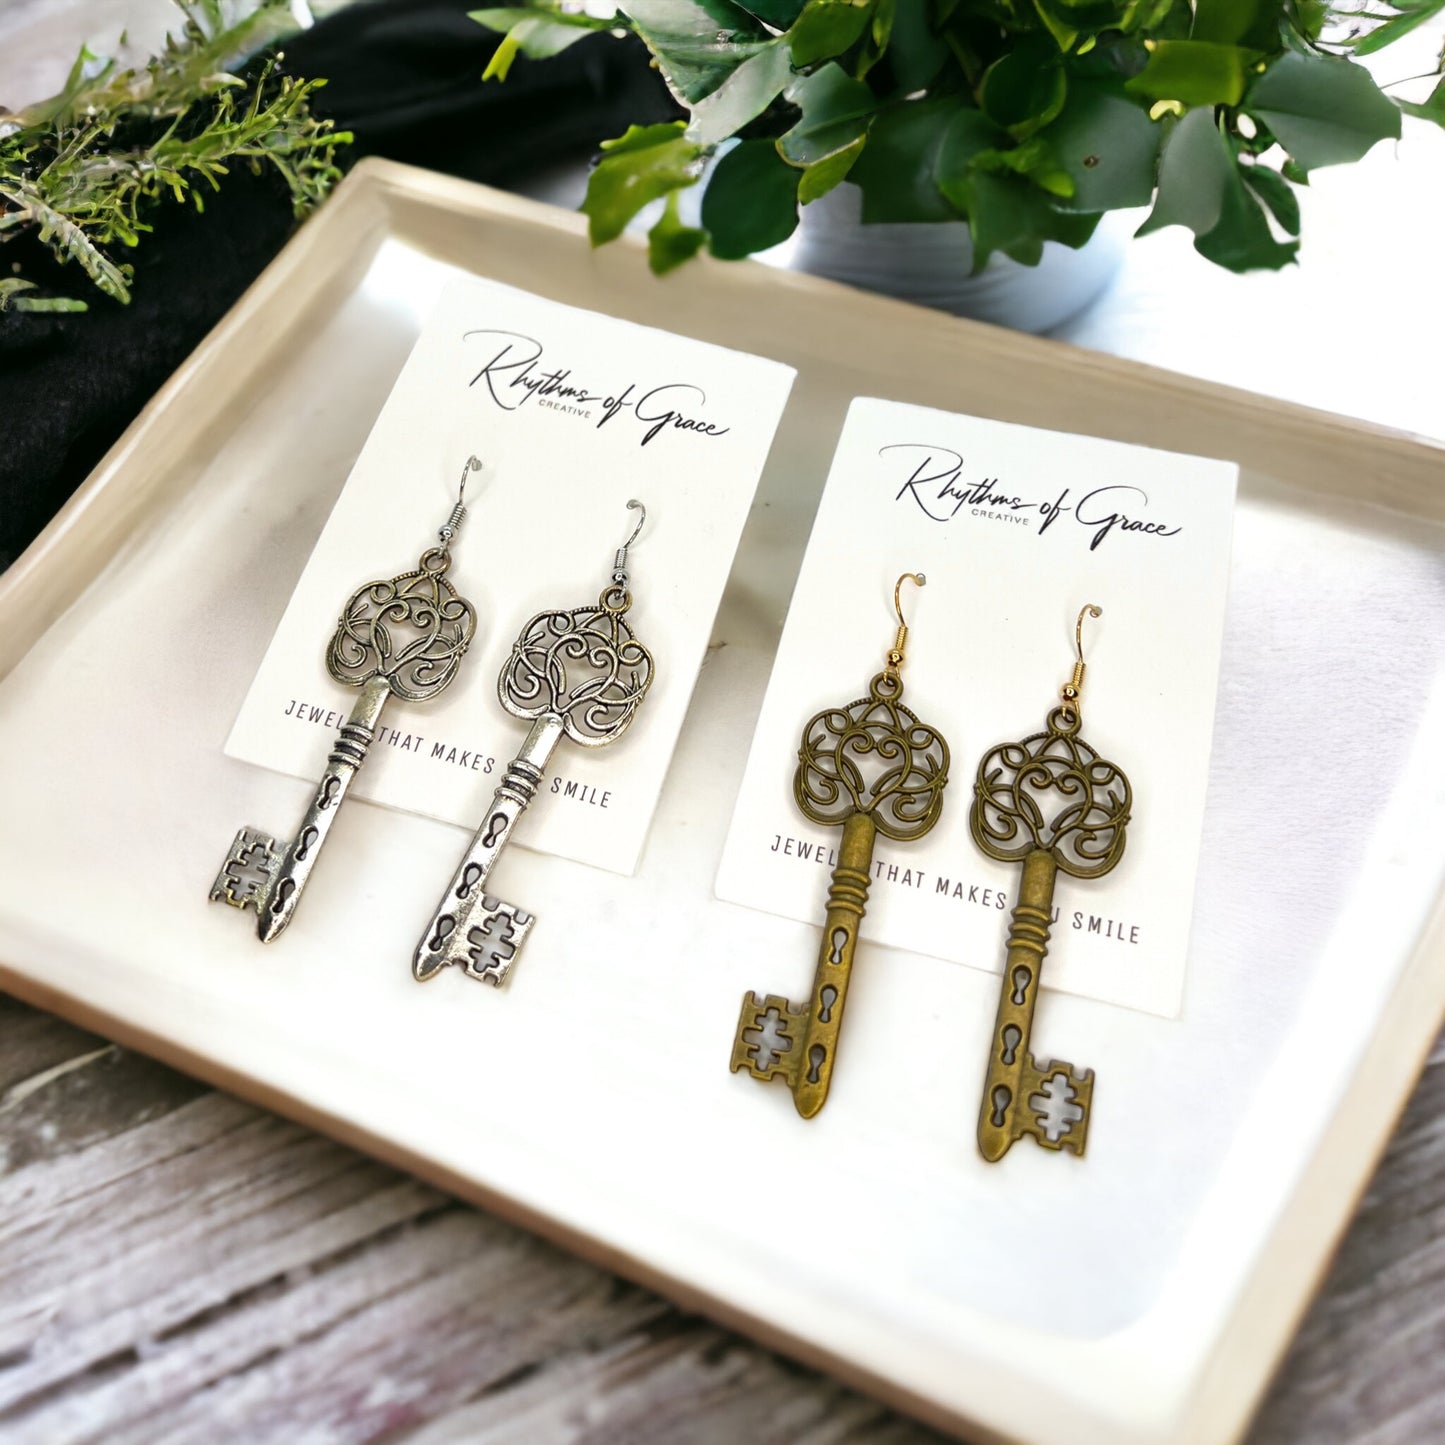 Antique Key Earrings - Lock Earrings, Handmade Earrings, Key Earrings, Motivational Gift